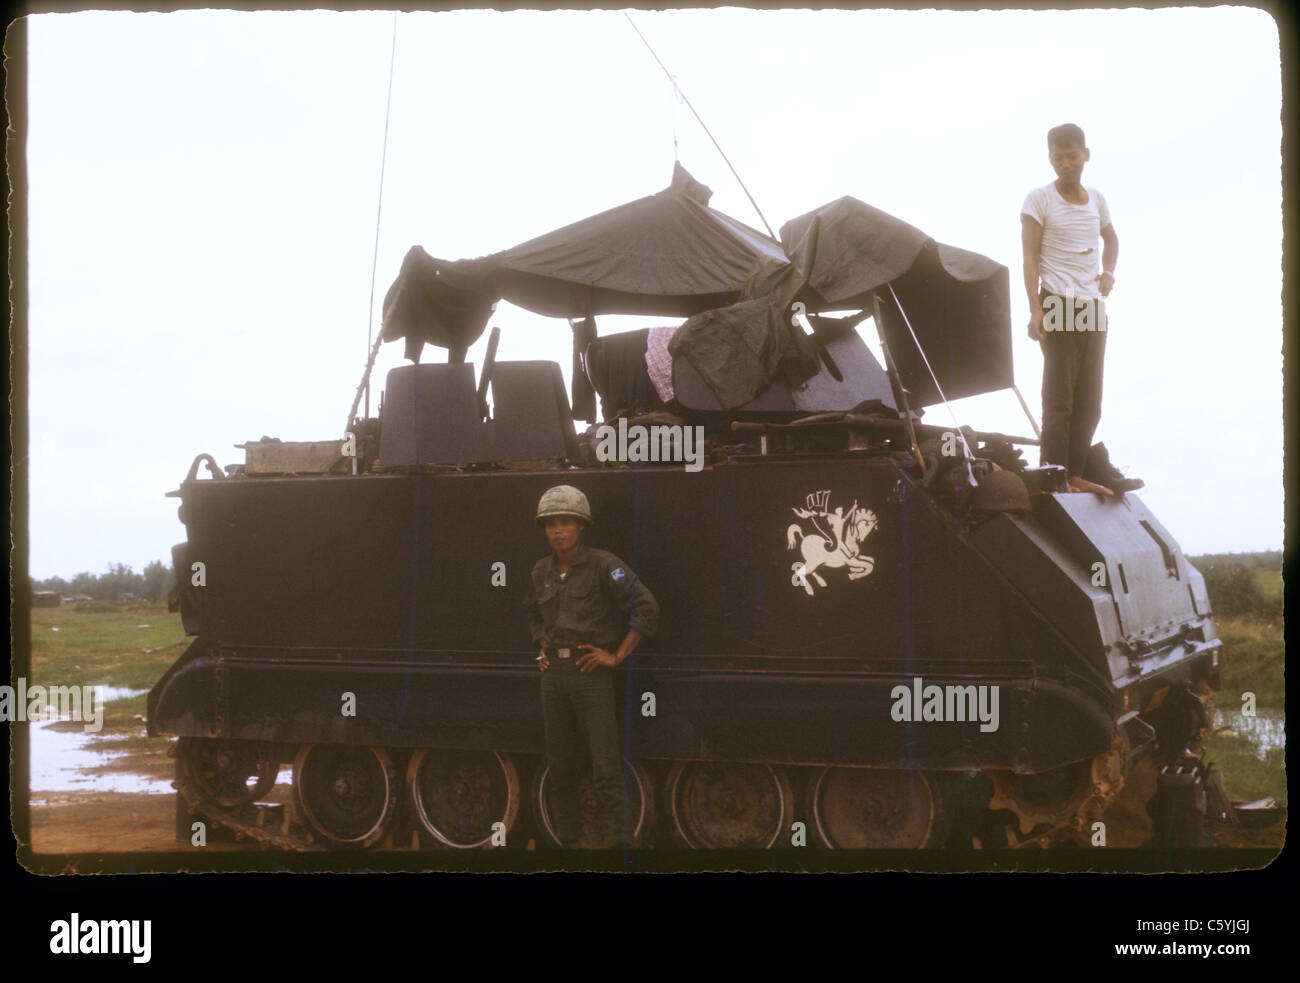 Soldaten neben APC ARVN Armee der Republik Vietnam Truppen während Vietnamkrieg 1971 Stockfoto